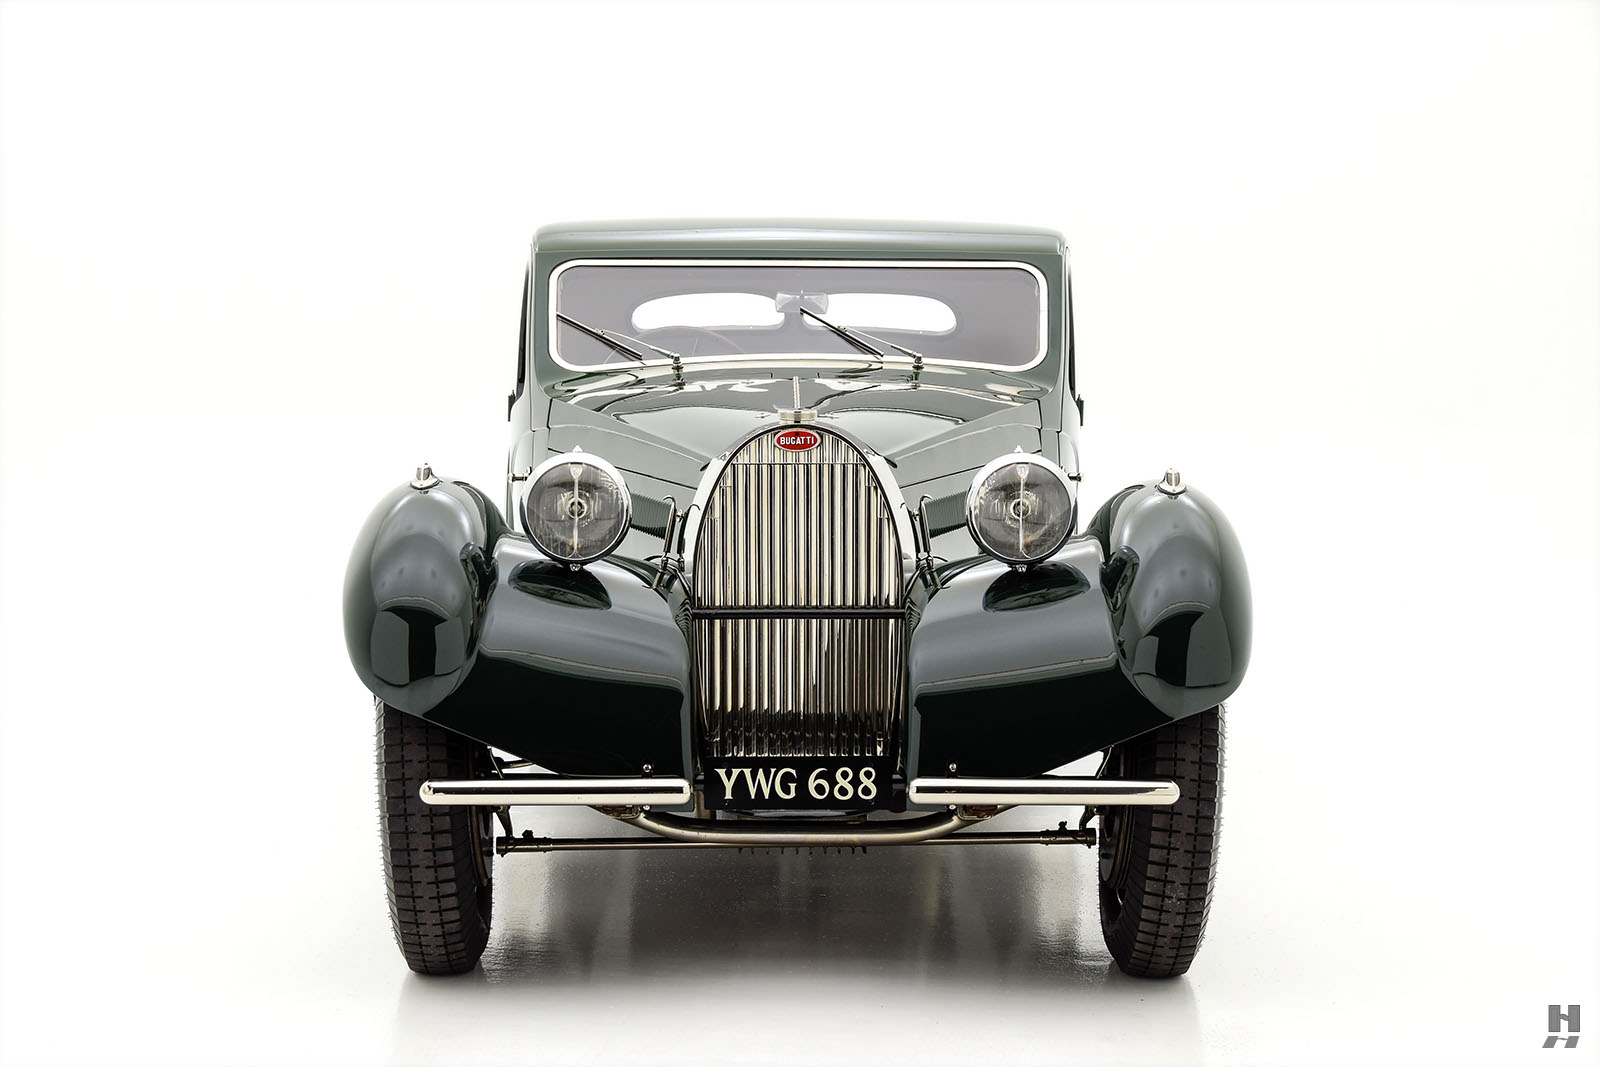 1936 bugatti type 57 ventoux